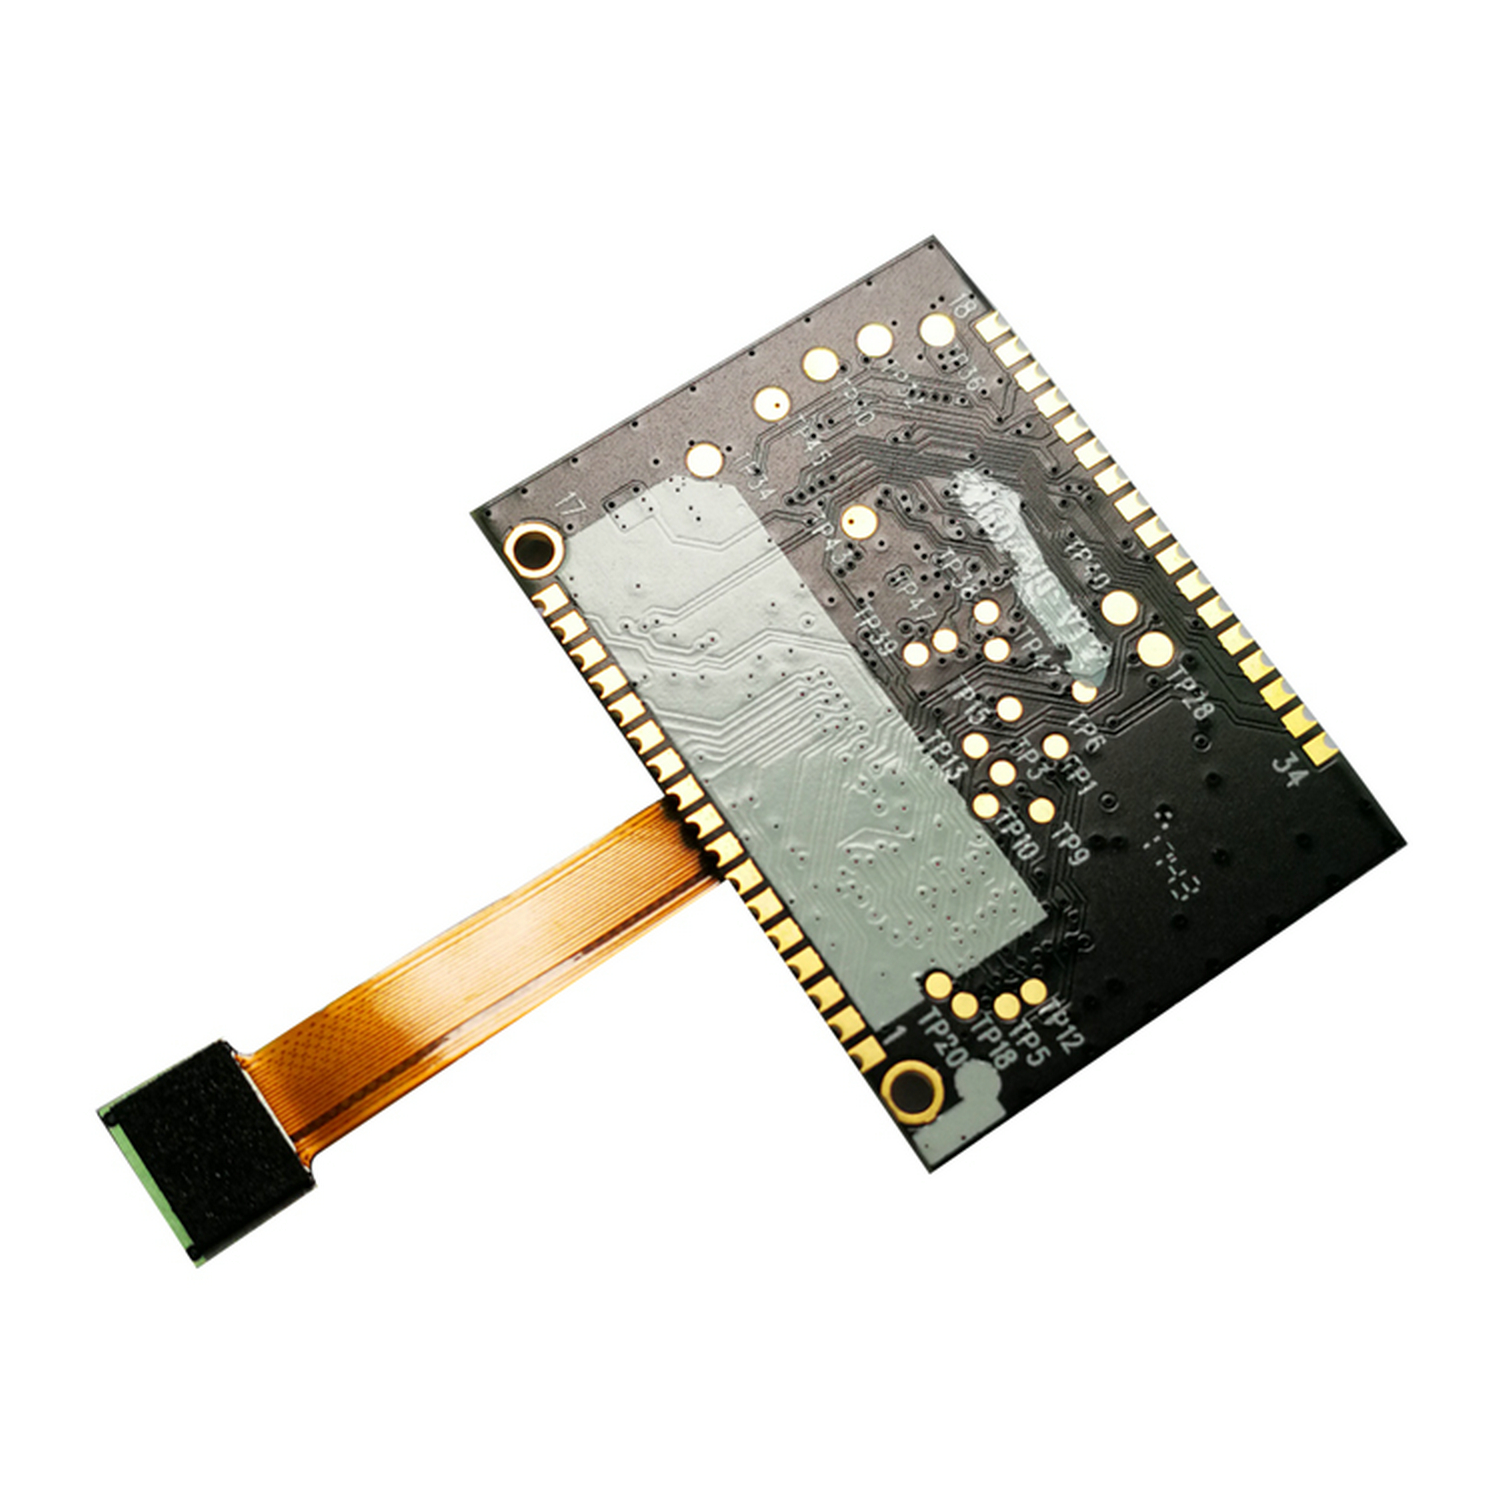 串口/USB二维解码板OEM扫描仪模块 HS-2001M